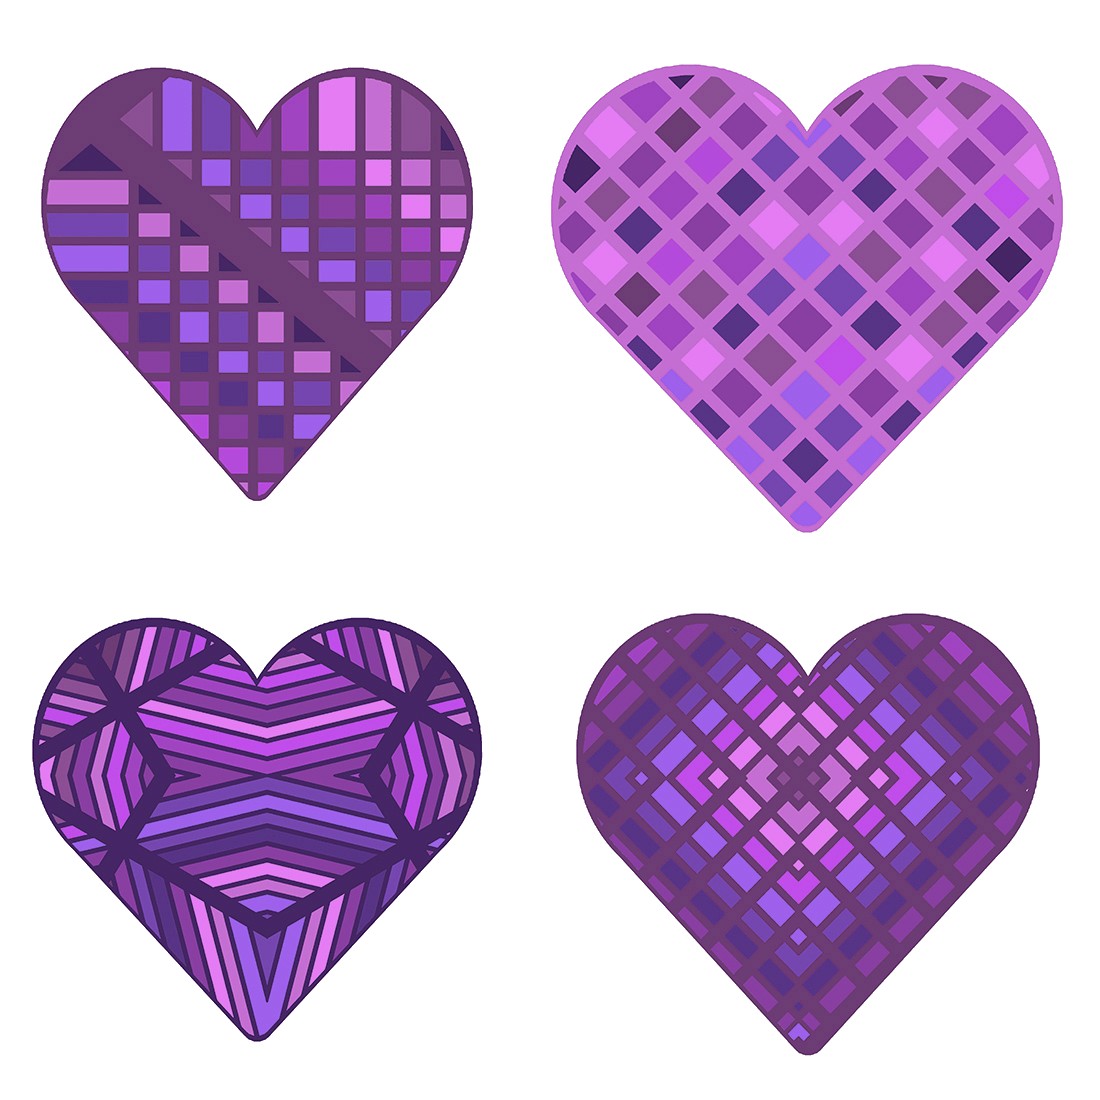 Pretty in Purple Hearts cover image.